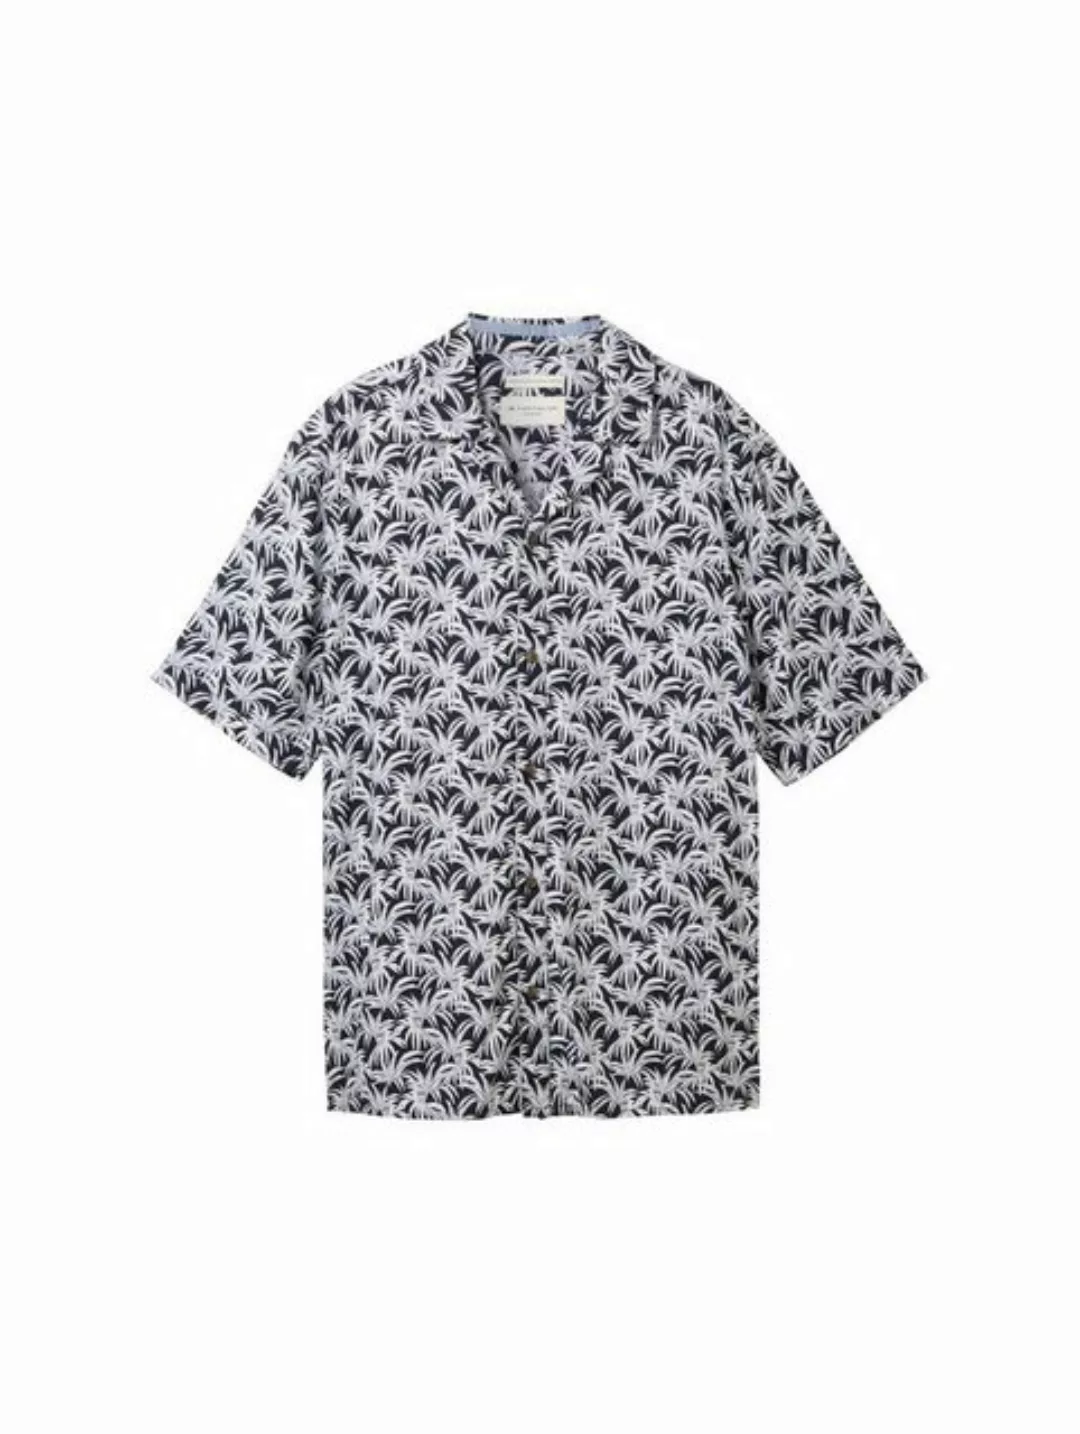 TOM TAILOR T-Shirt comfort printed viscose shirt, navy coloured leaf design günstig online kaufen